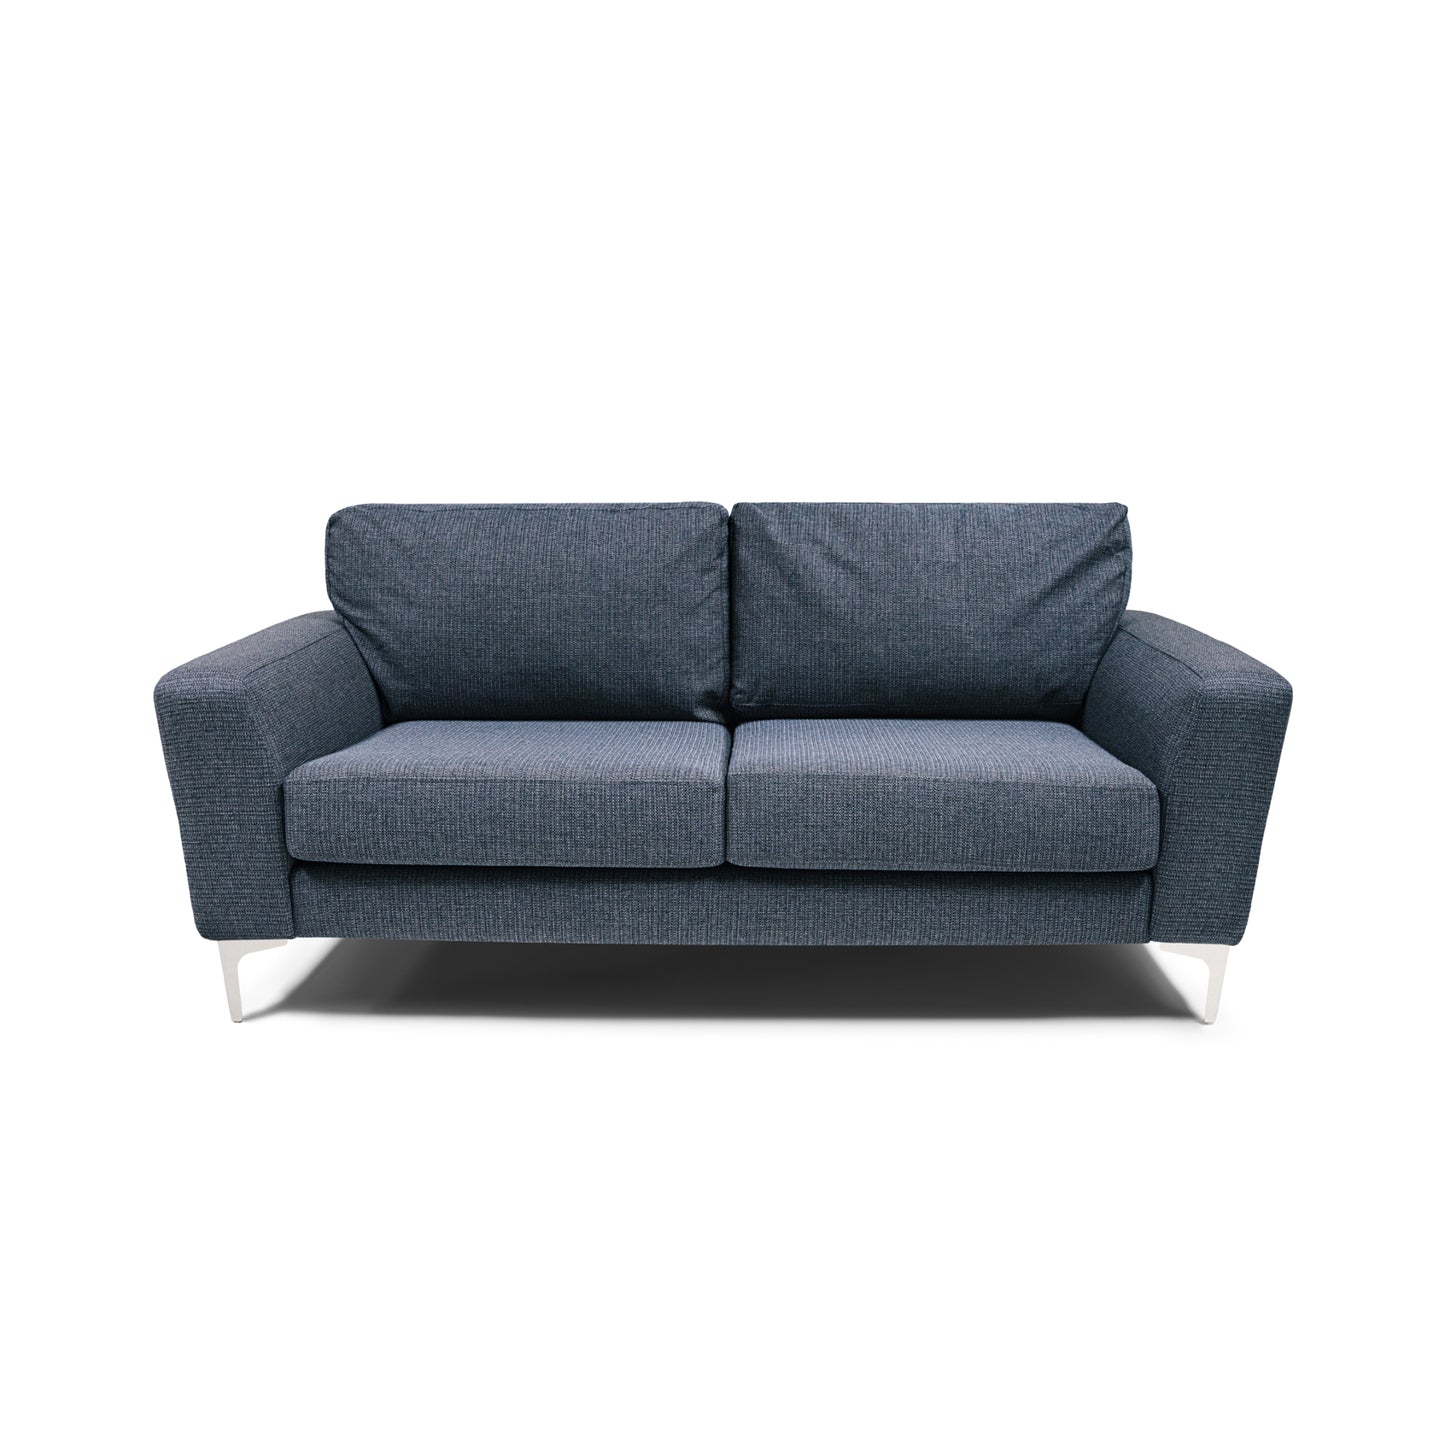 The Iveagh Small Sofa